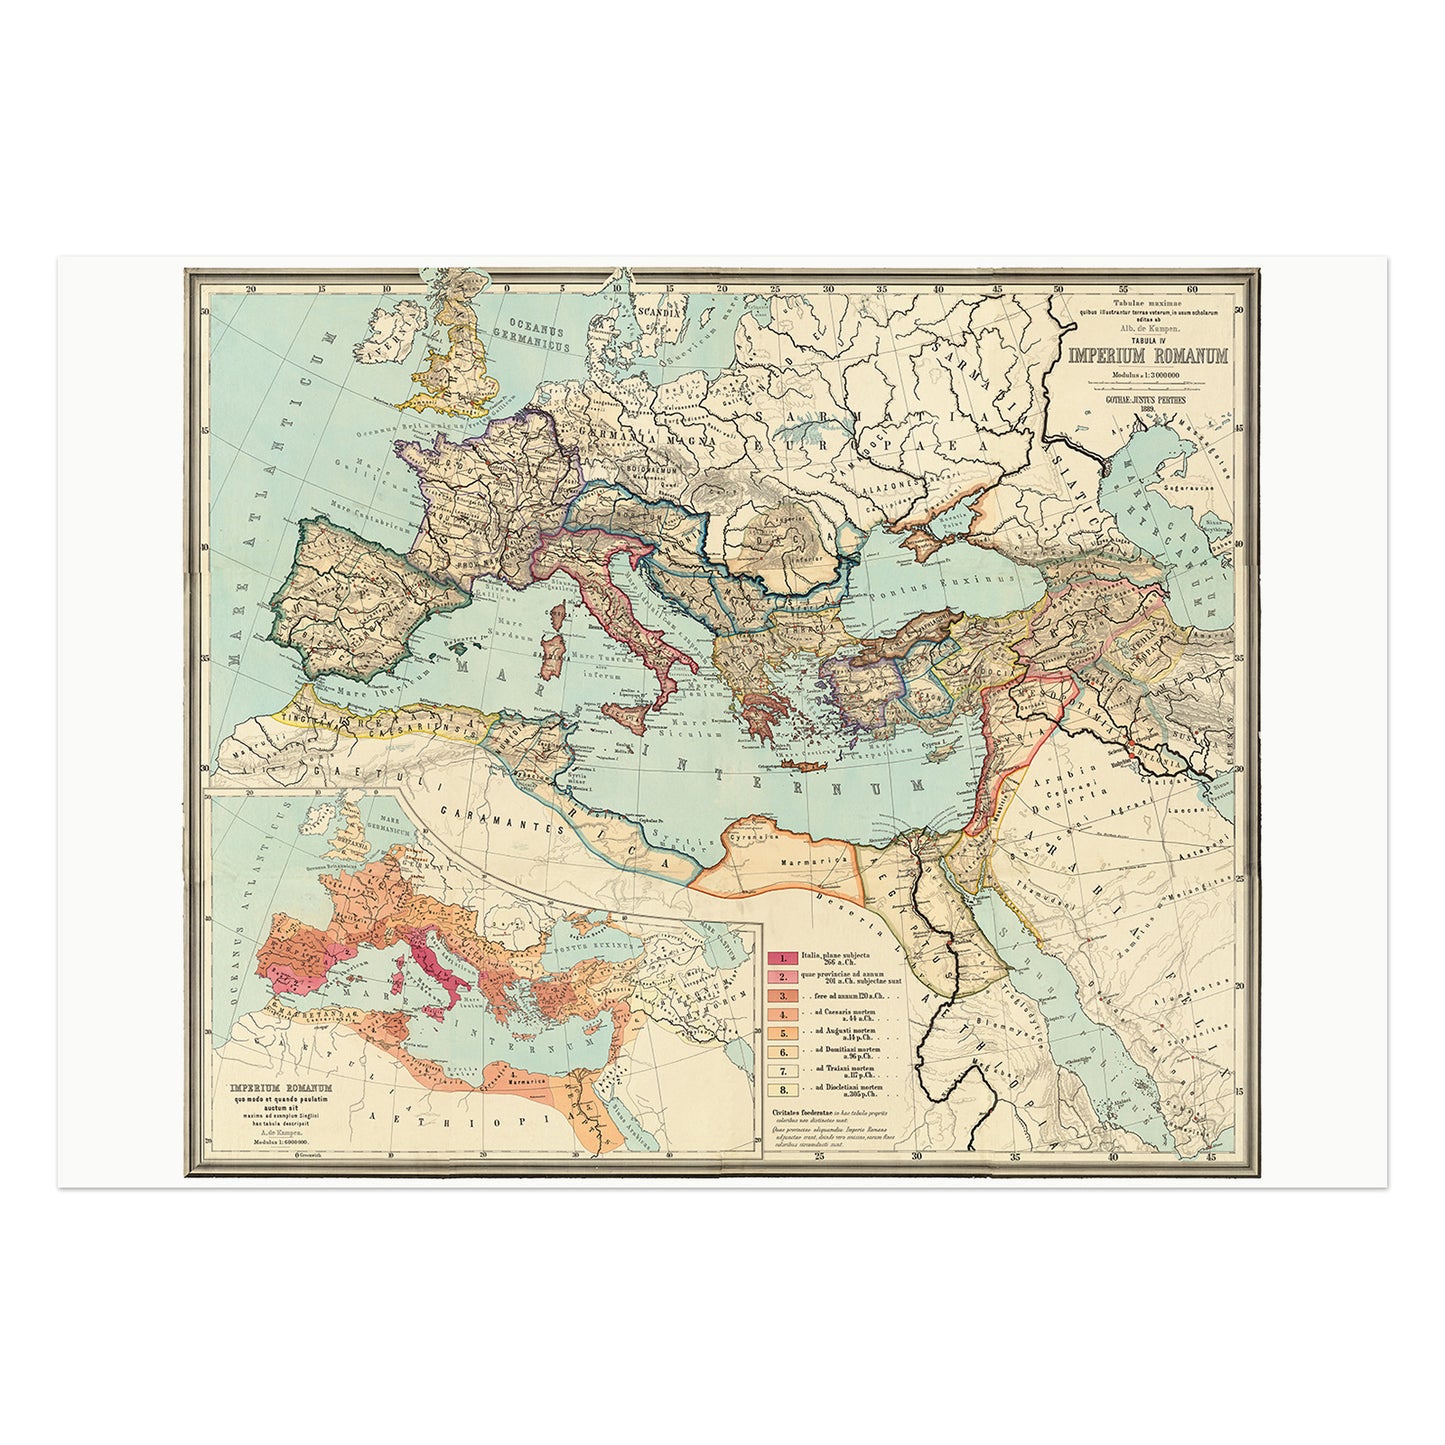 Imperium Romanum, map of the Roman Empire